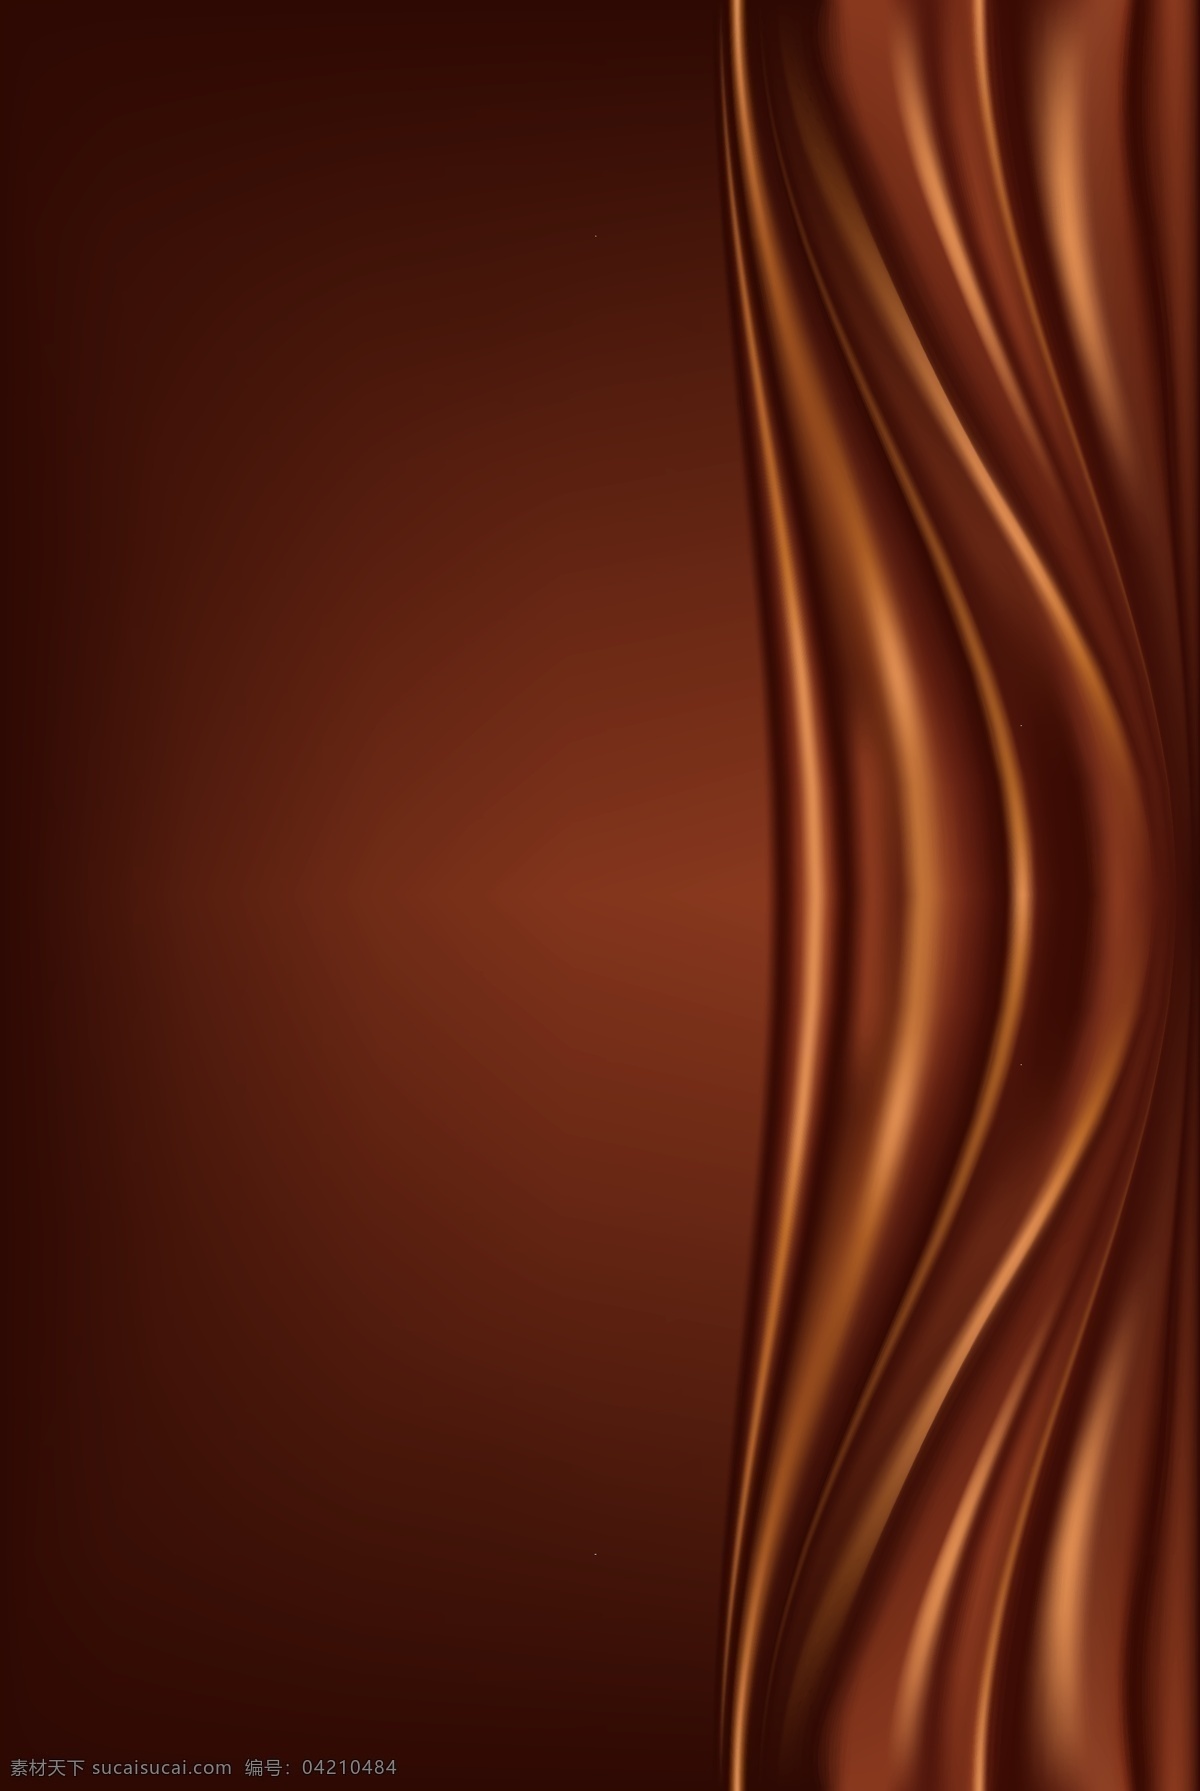 矢量 质感 丝绸 背景 丝绸背景 巧克力背景 浓滑丝绸 巧克力广告 质感丝绸 矢量丝绸背景 浓稠巧克力 设计背景 底纹边框 背景底纹